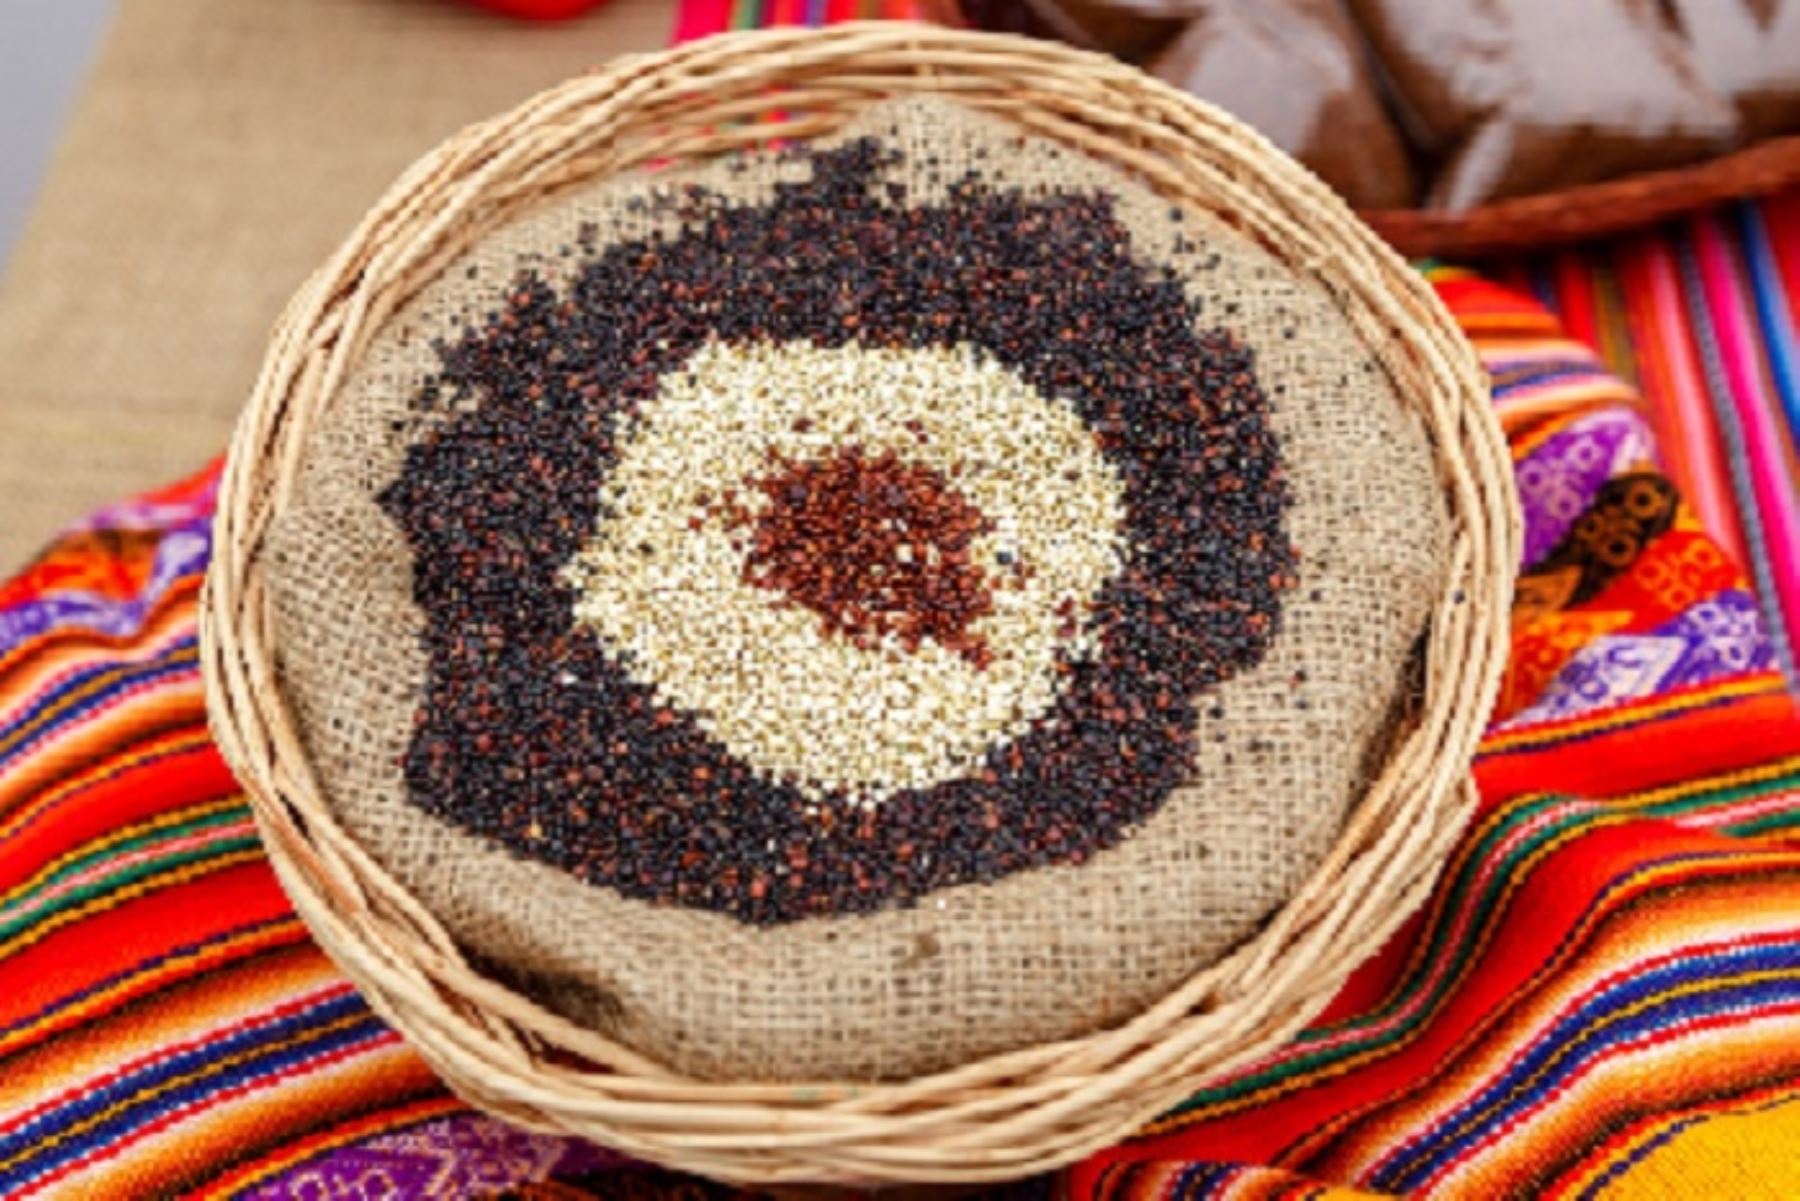 A la fecha, Agro Rural abastece a más de 665 mil familias a nivel nacional con la venta de granos andinos y otros alimentos provenientes de la agricultura familiar en sus mercados itinerantes